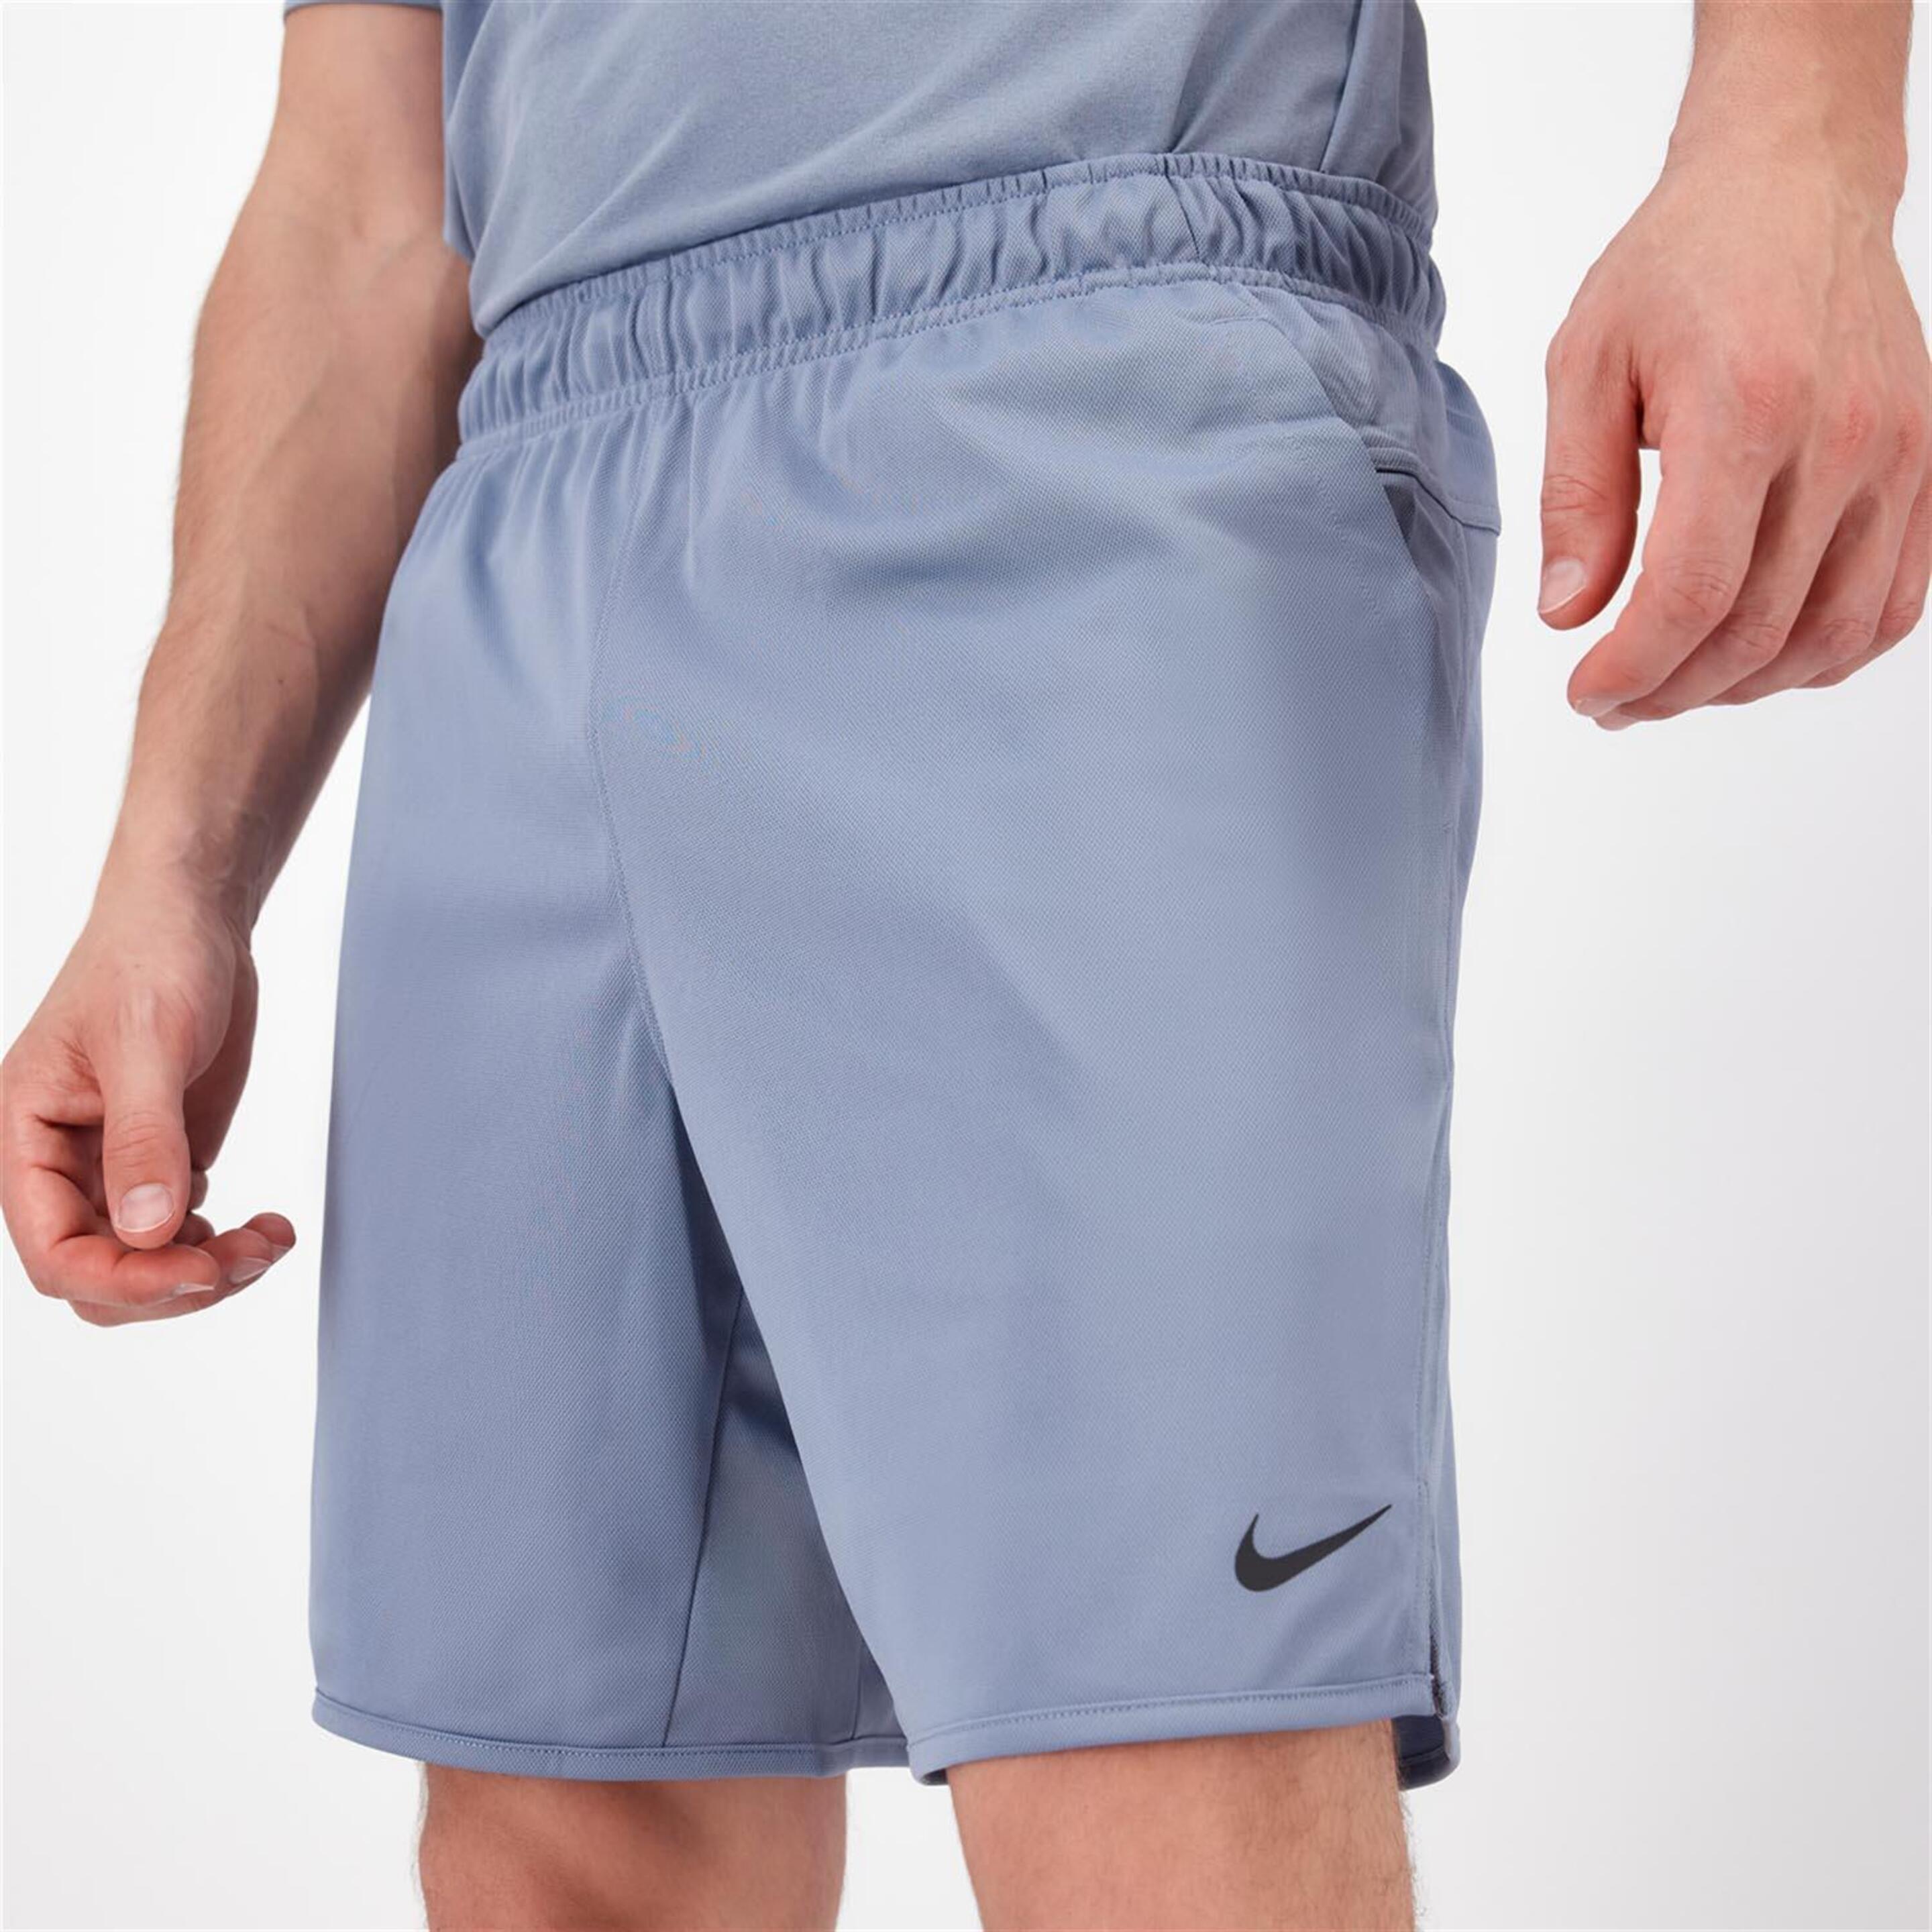 Pantalón Nike - gris - Pantalón Running Hombre